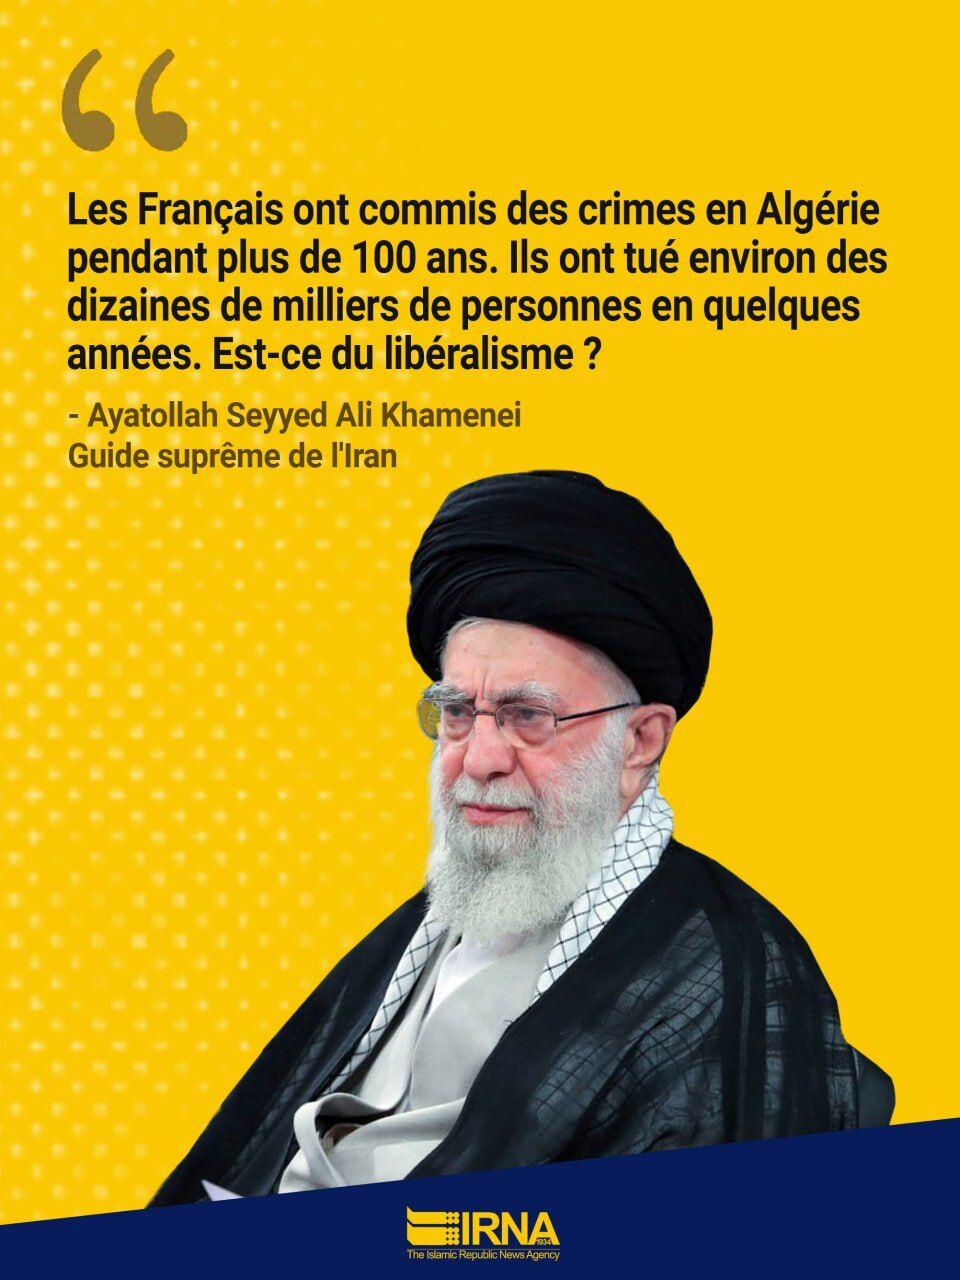 Les crimes français à Alger révèlent de fausses déclarations sur le libéralisme